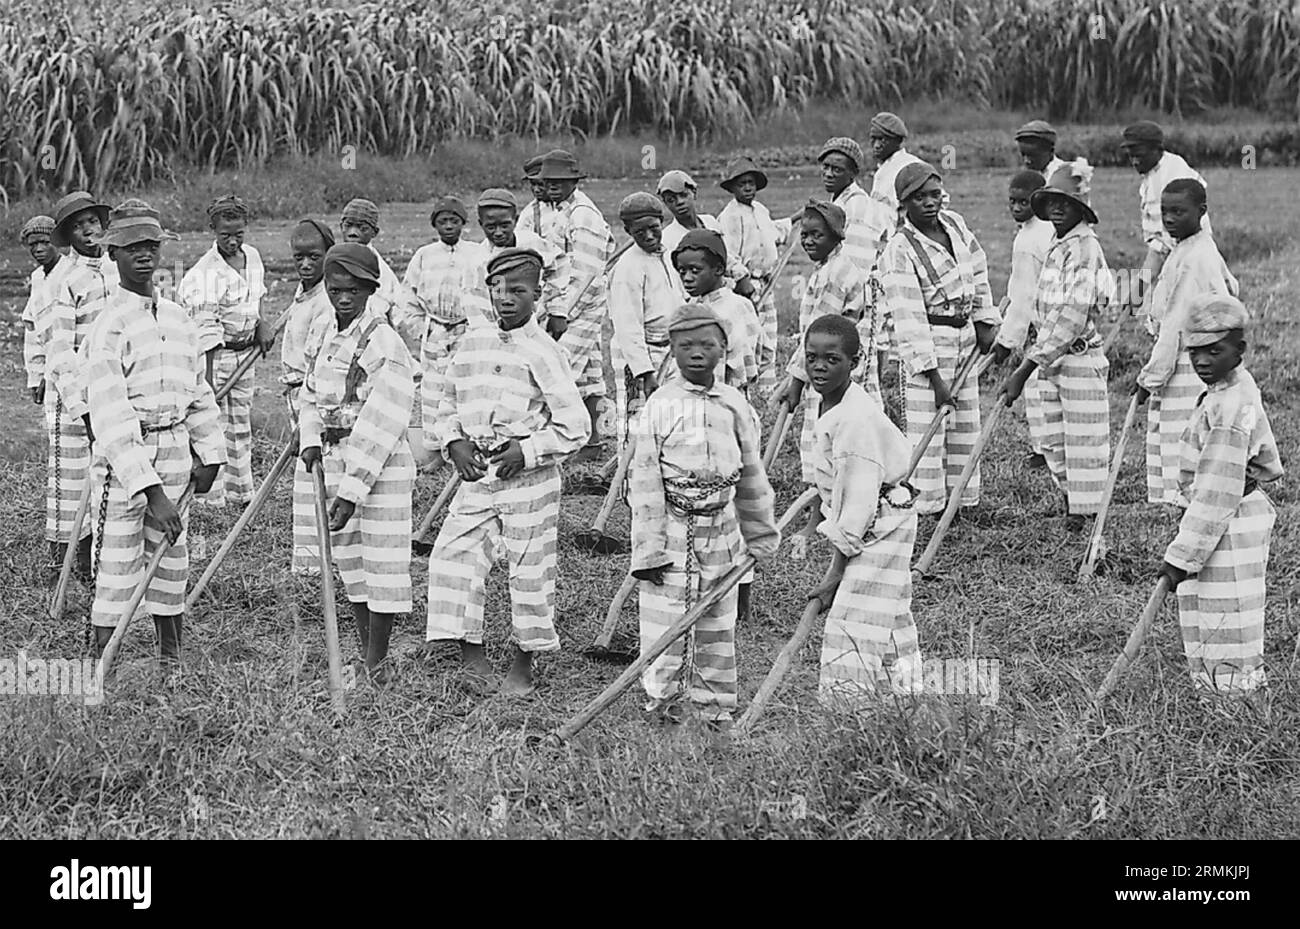 JUNGE SCHWARZE STRÄFLINGE in einer südamerikanischen Kettenbande um 1903. Einige Gefängnisse verpachteten Gruppen, um Zwangsarbeit zu leisten, wie hier auf einer Zuckerplantage. Stockfoto